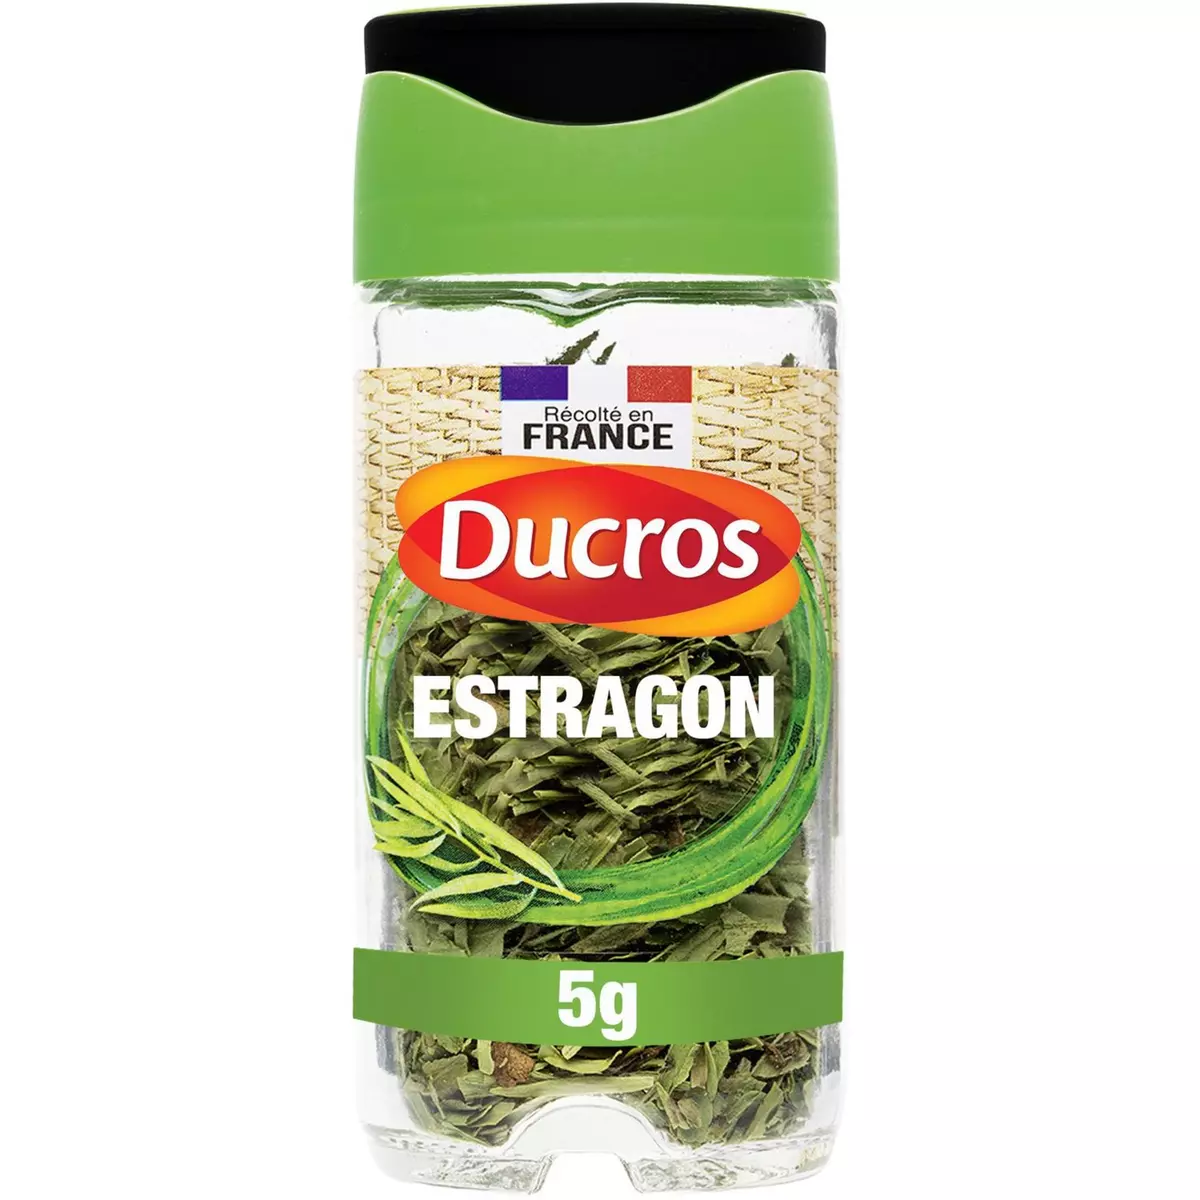 DUCROS Estragon 5g